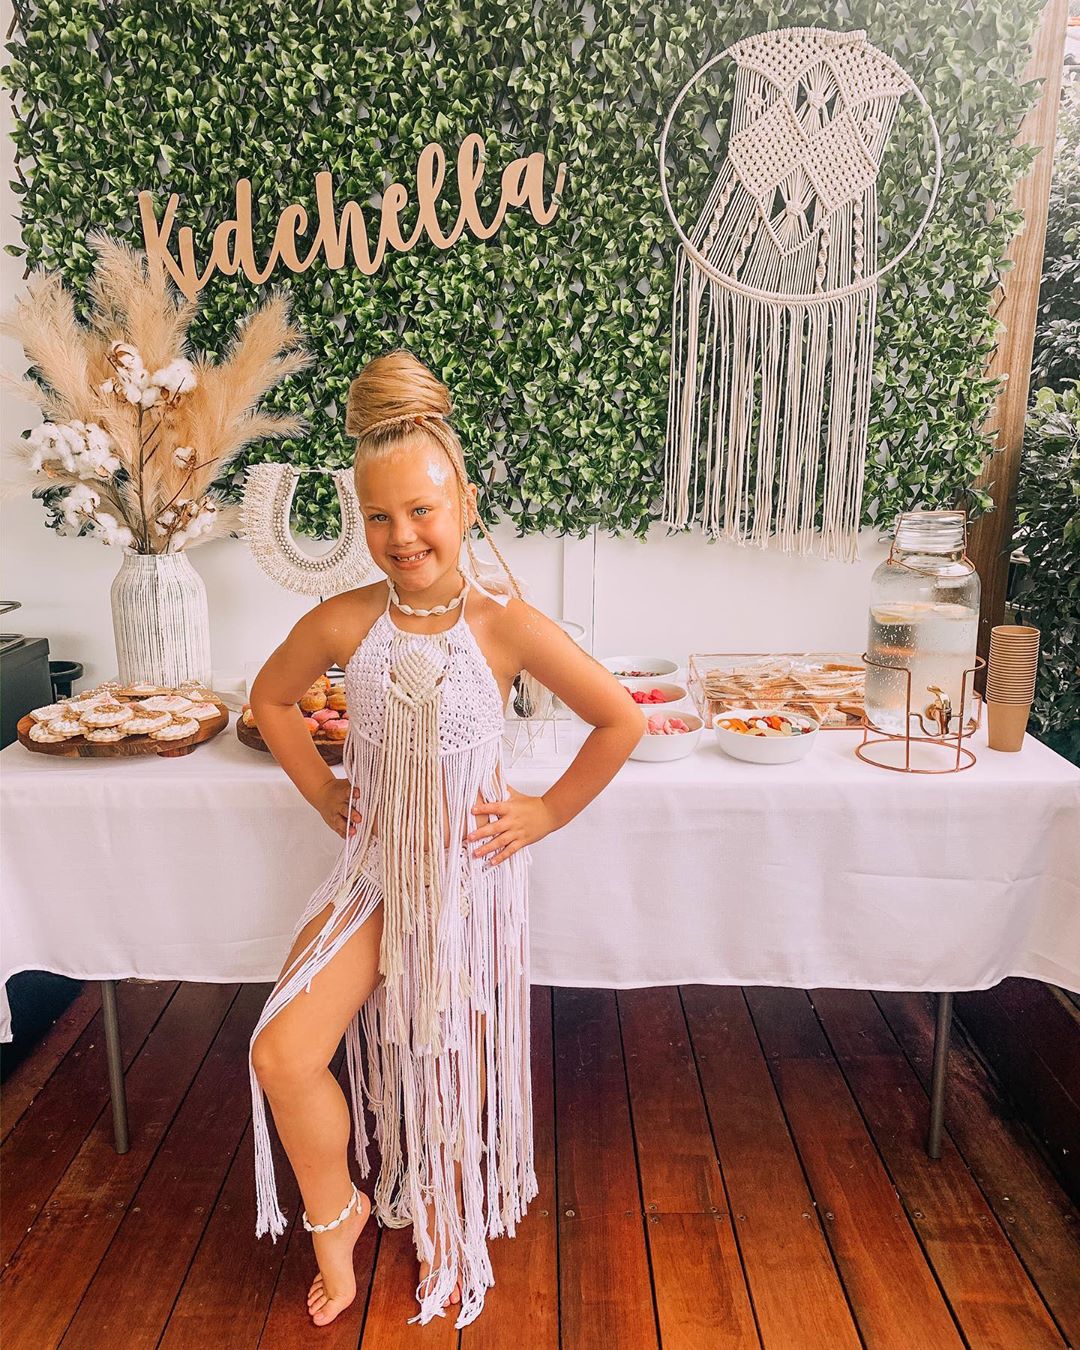 Мама устроила вечеринку в стиле Kidchella на 7-летие дочери